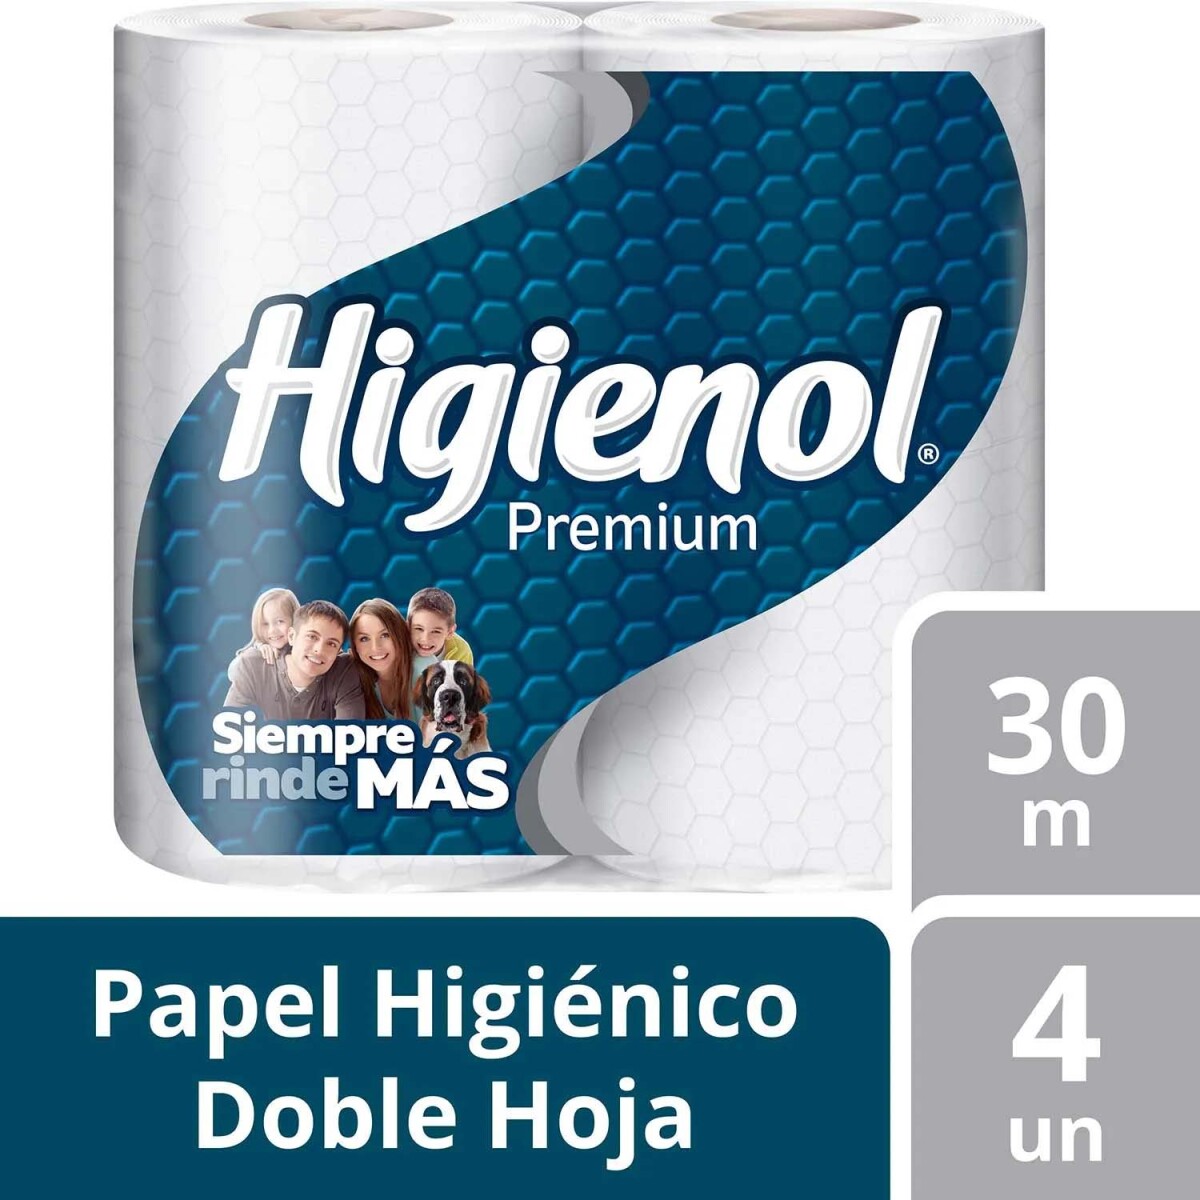 Higienol Papel Higienico Premium 